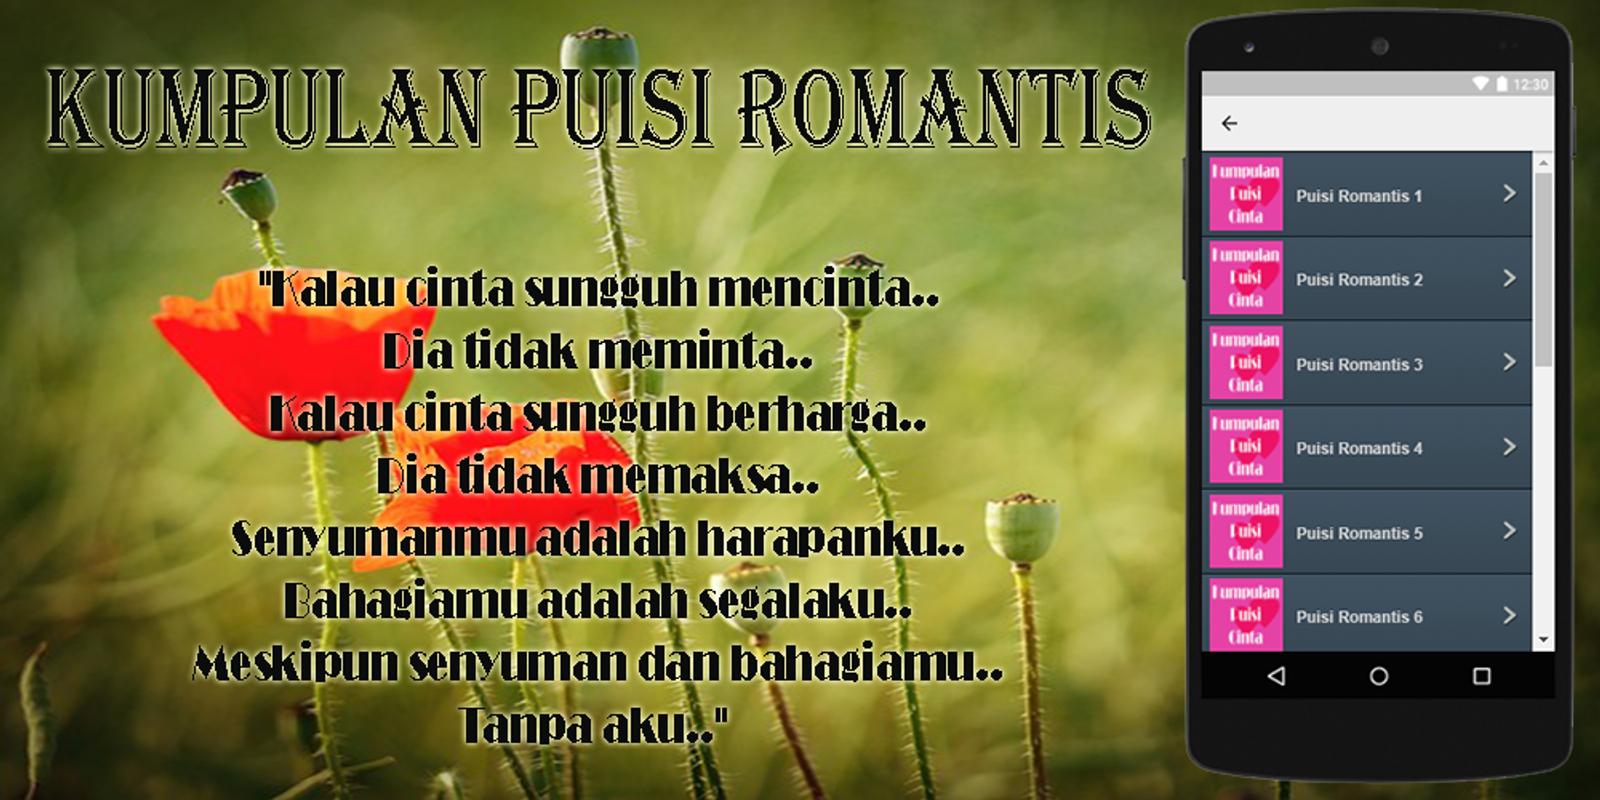 Kumpulan Puisi Romantis For Android APK Download